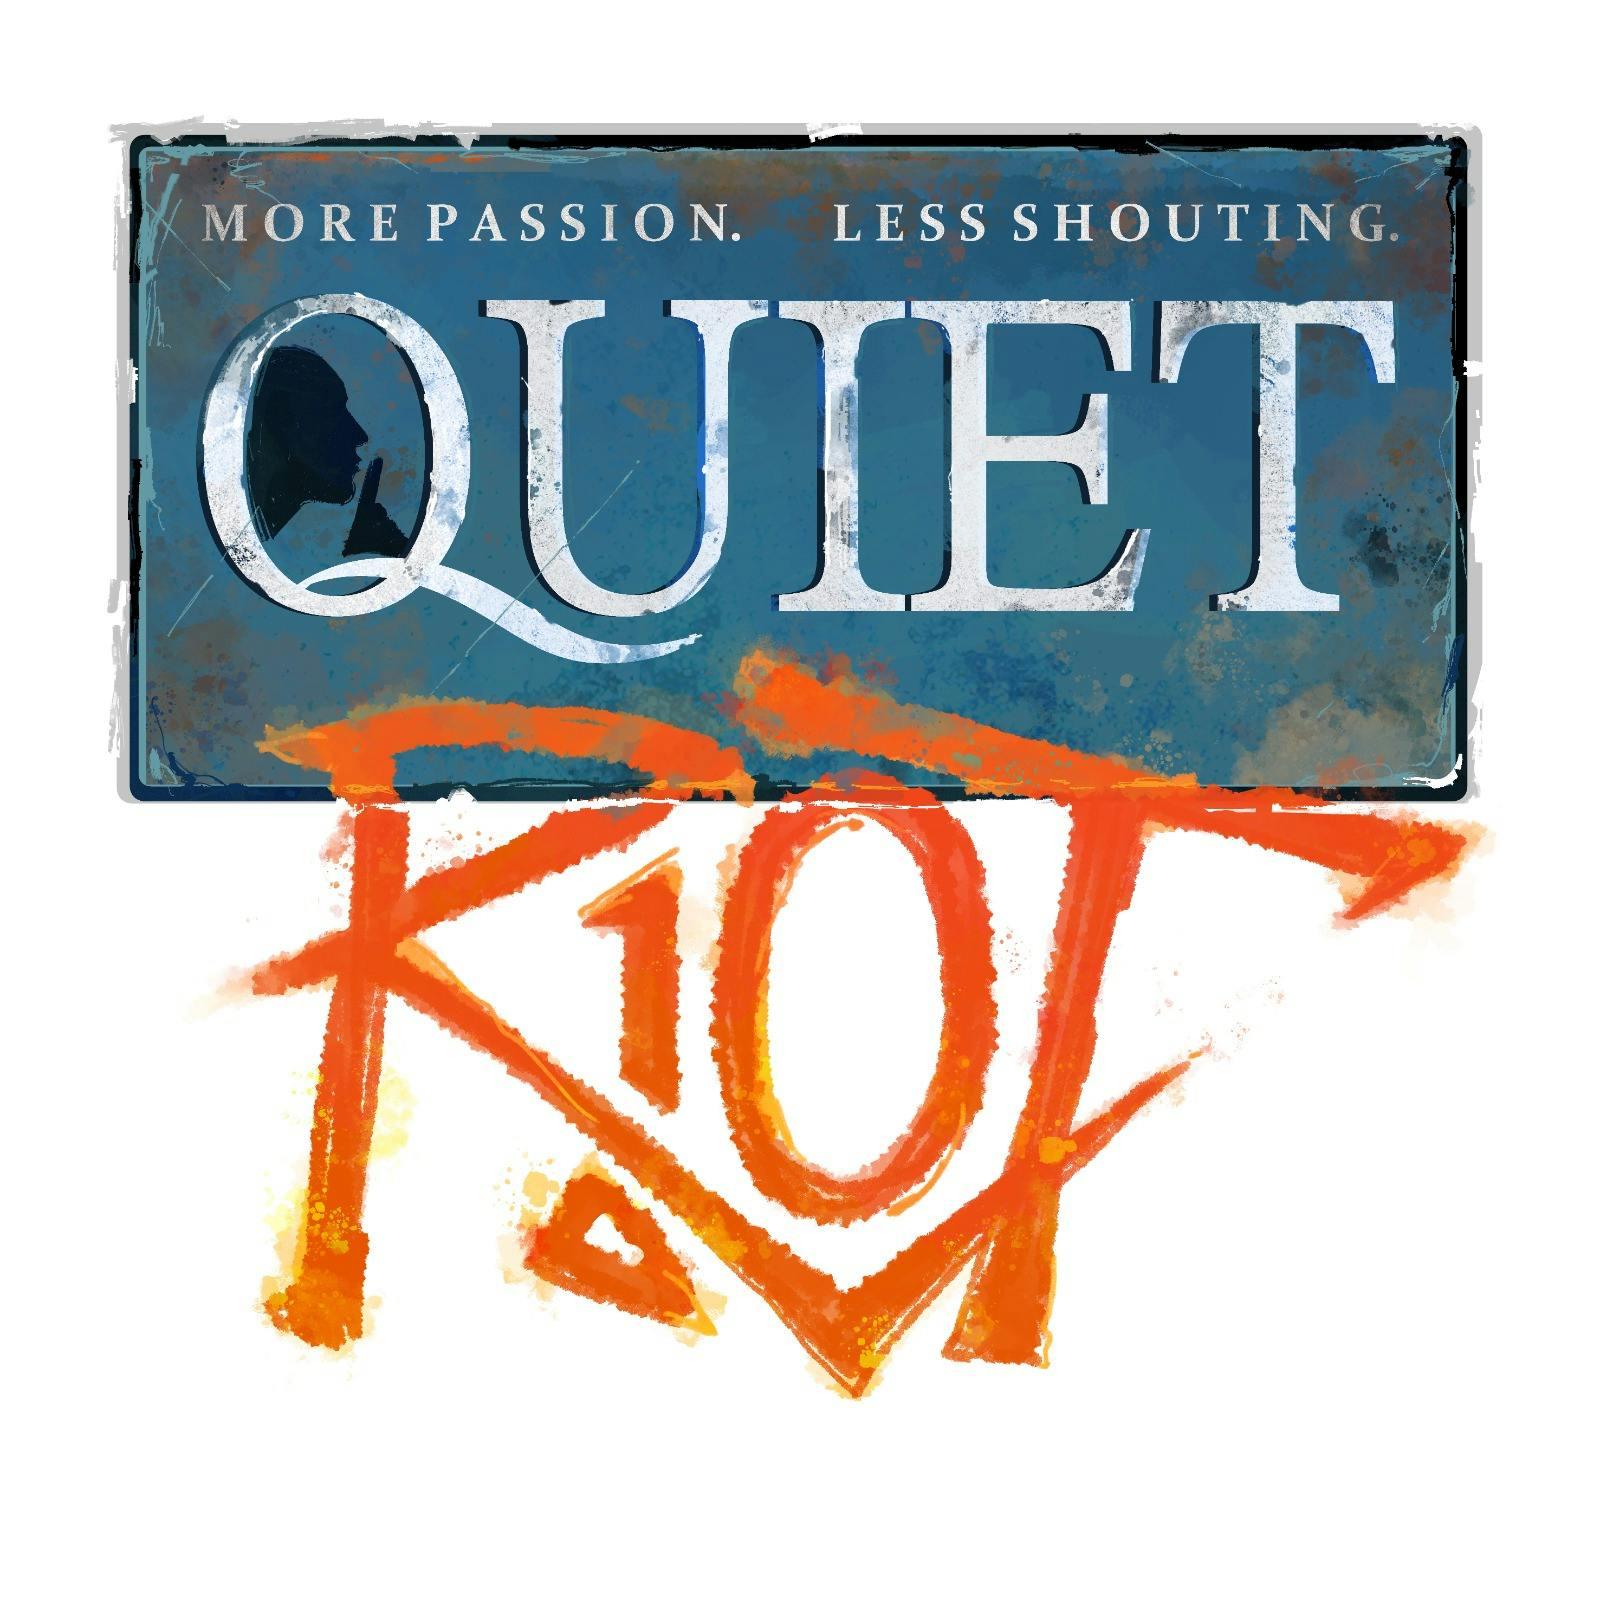 Quiet Riot, trailer #2